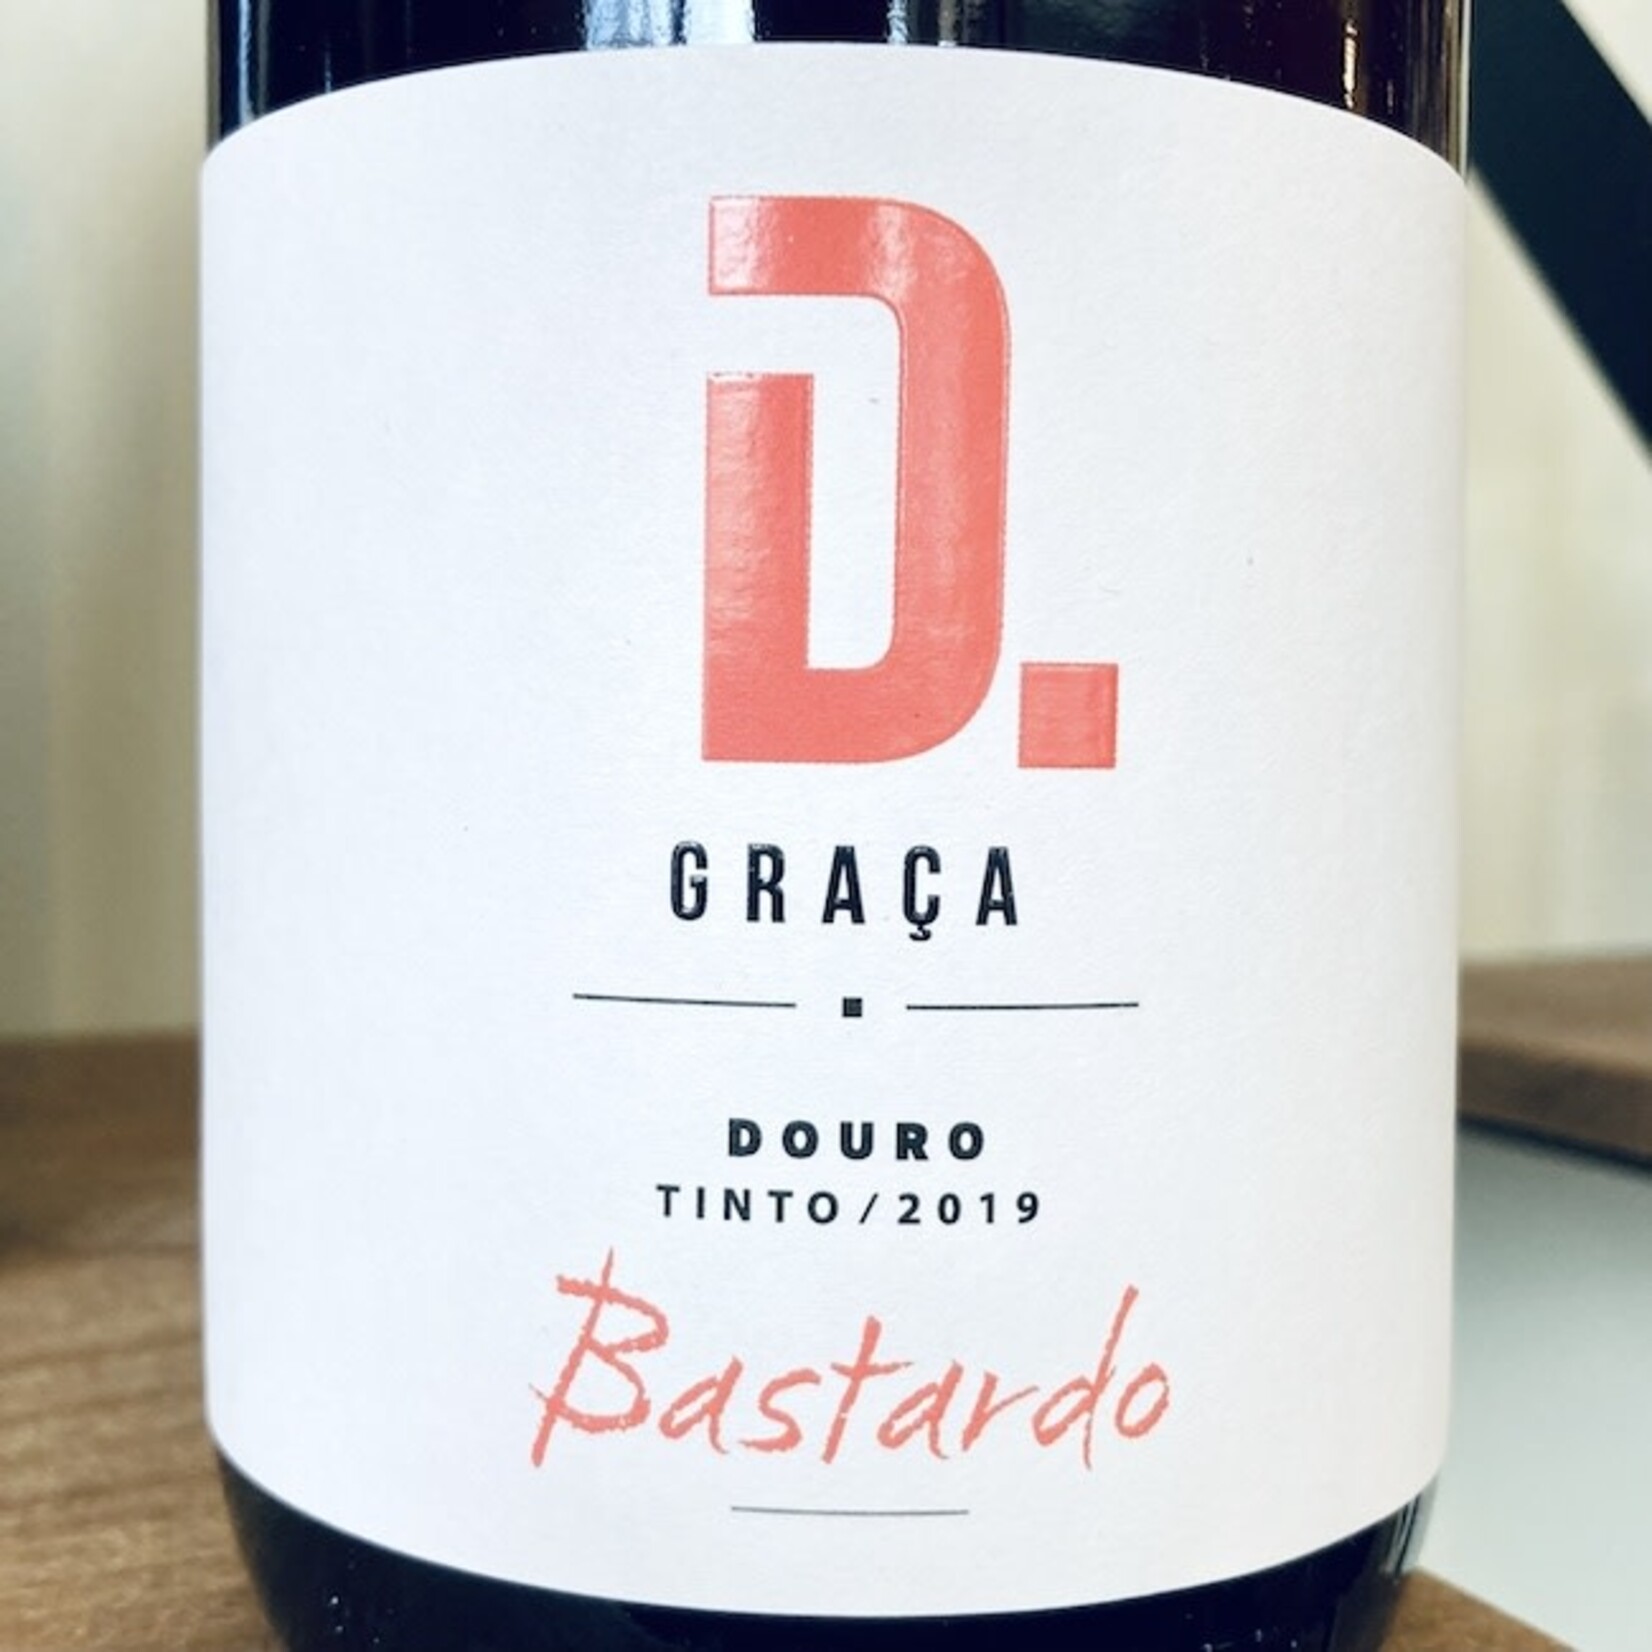 Portugal 2019 Vinilourenço "D. Graça" Douro Tinto Bastardo